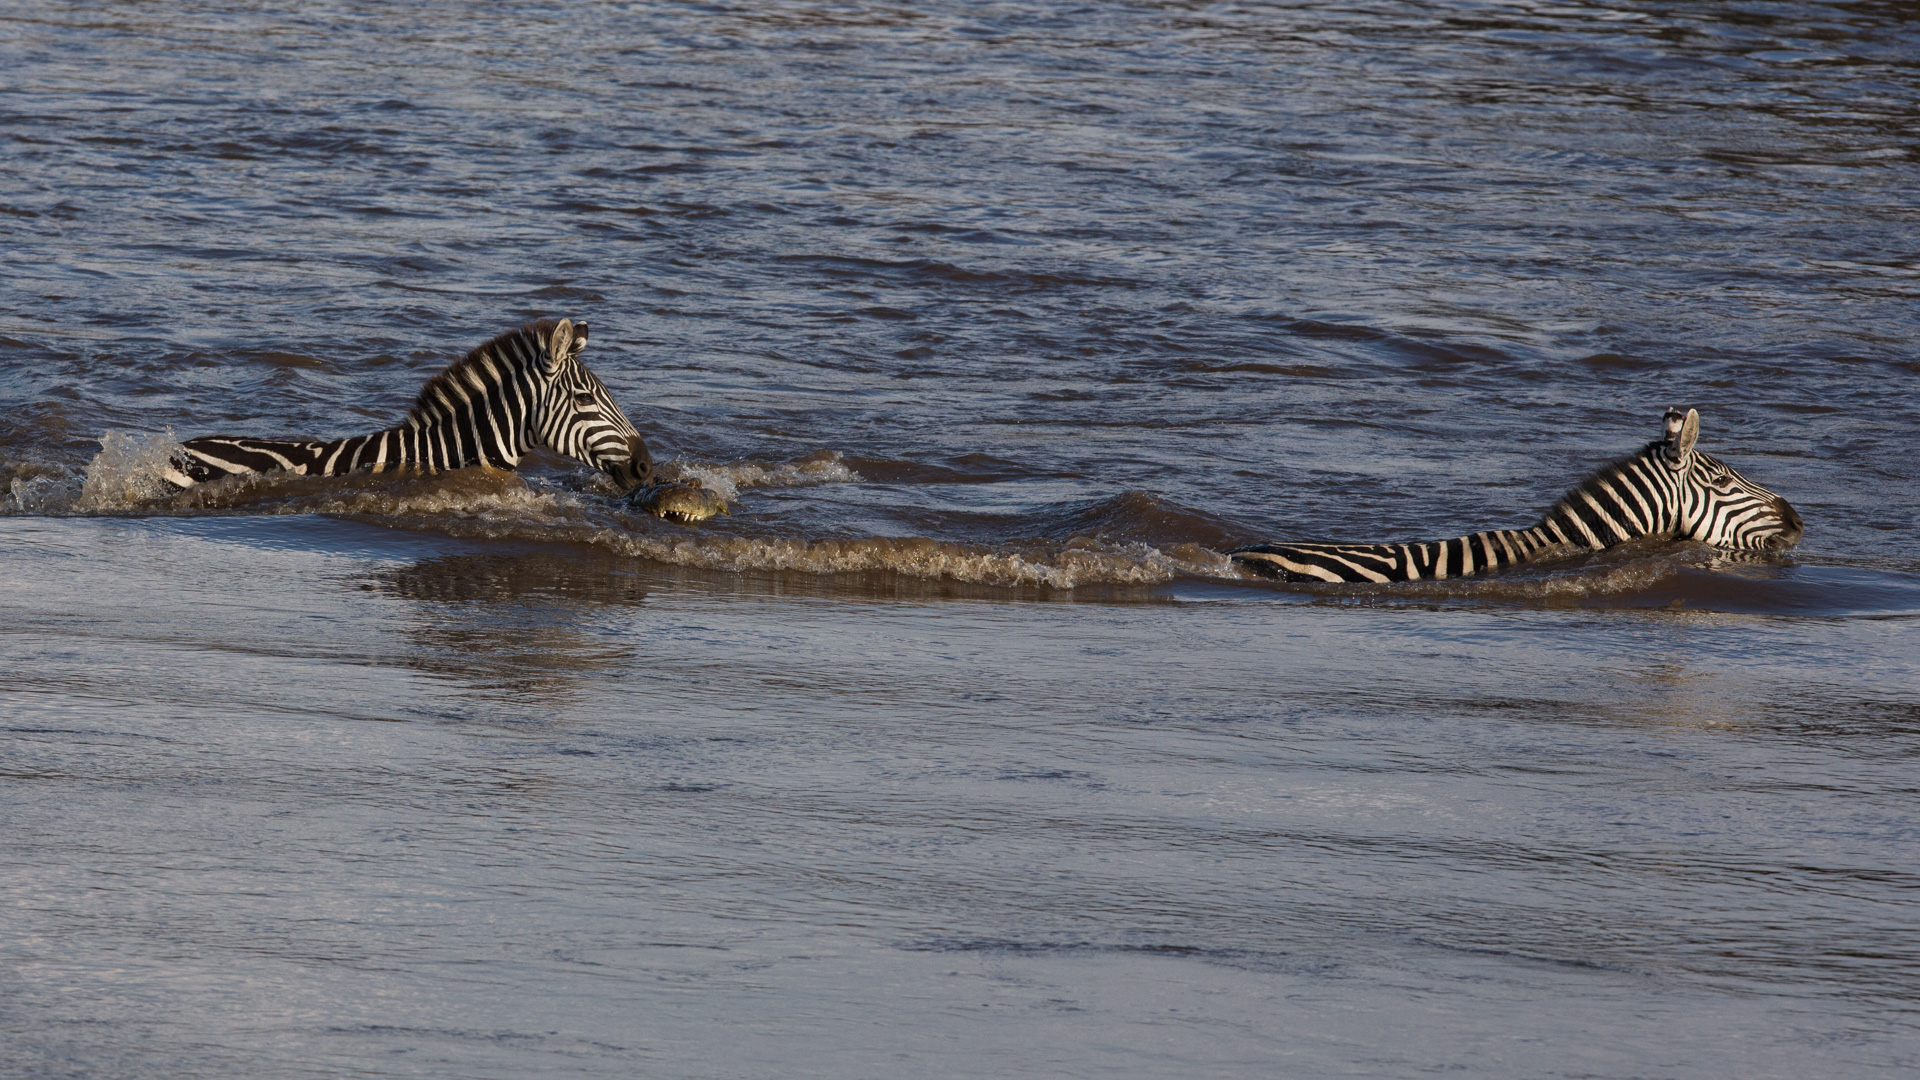 Zebra escaping crocodile